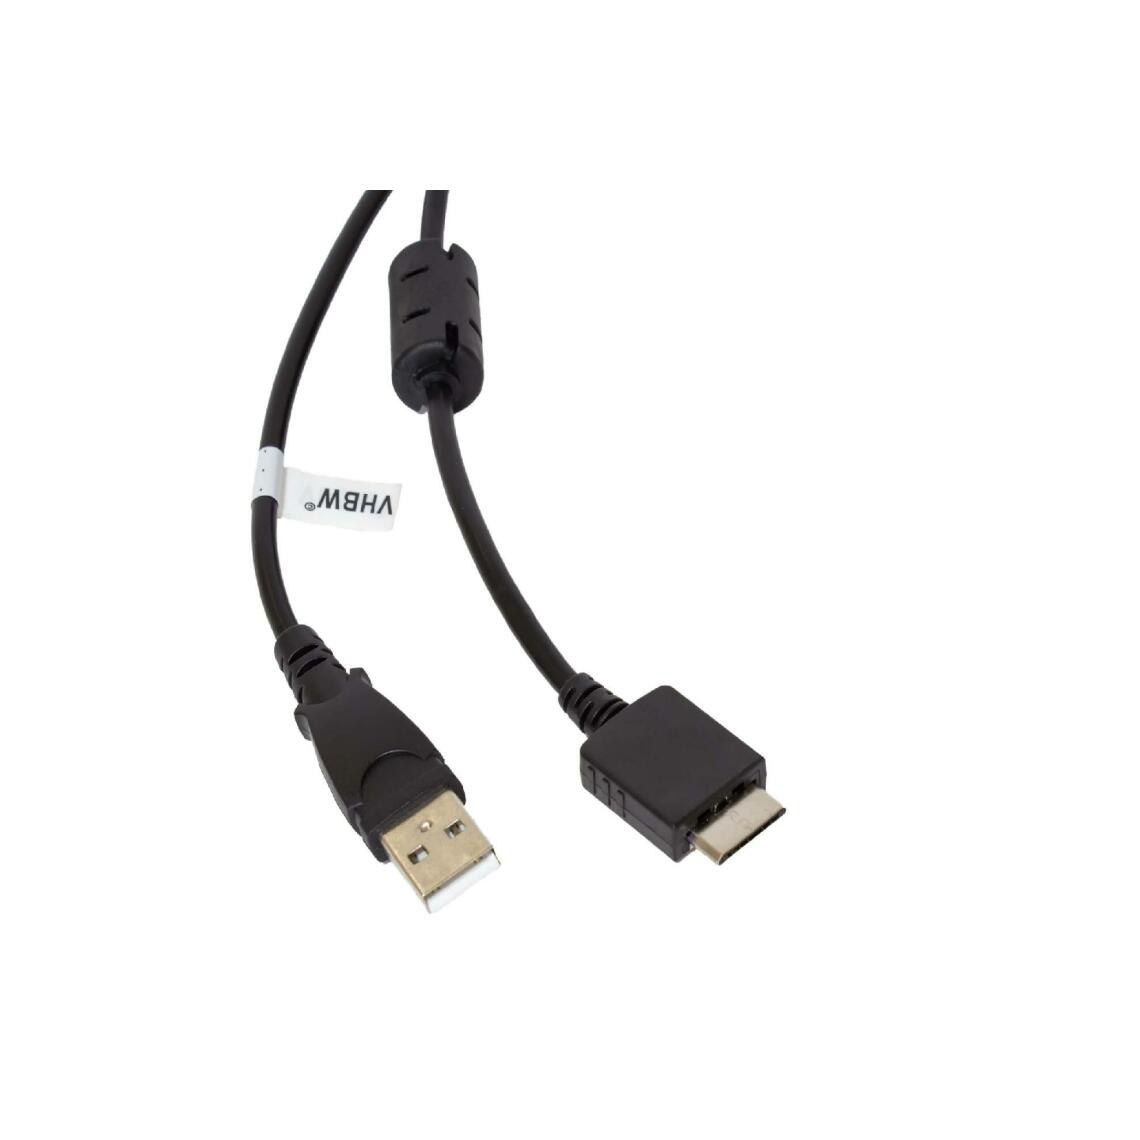 Vhbw - vhbw câble de données USB (type A sur lecteur MP3) câble de chargement compatible avec Sony Walkman NWZ-S716FSNC, NWZ-S718F lecteur MP3 - noir, 150cm - Alimentation modulaire